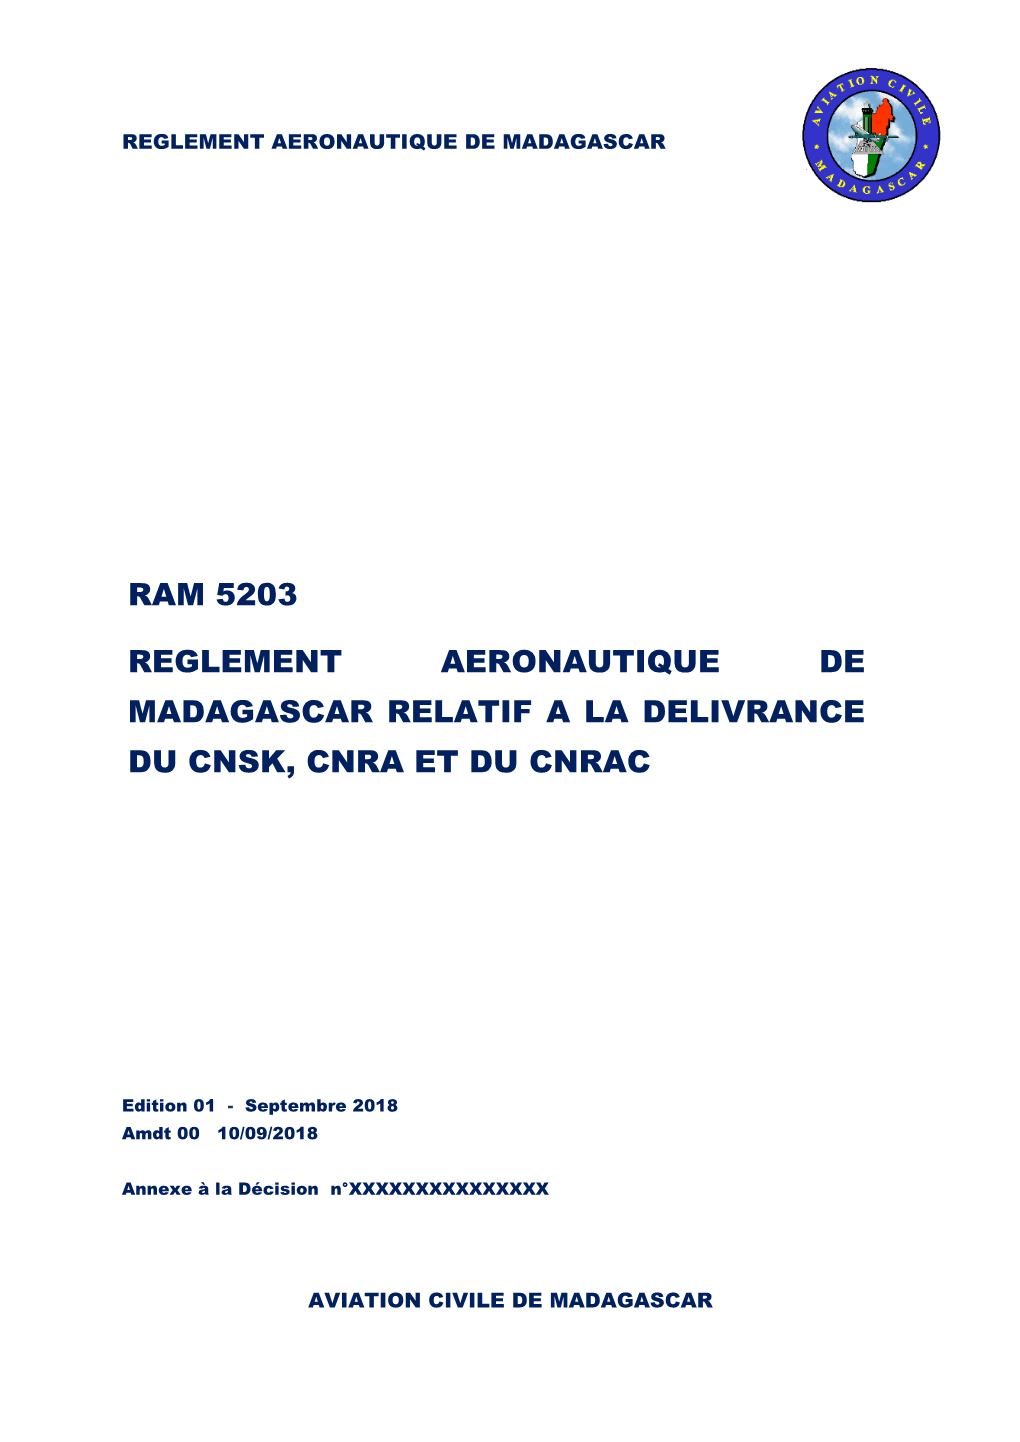 Ram 5203 Reglement Aeronautique De Madagascar Relatif a La Delivrance Du Cnsk, Cnra Et Du Cnrac